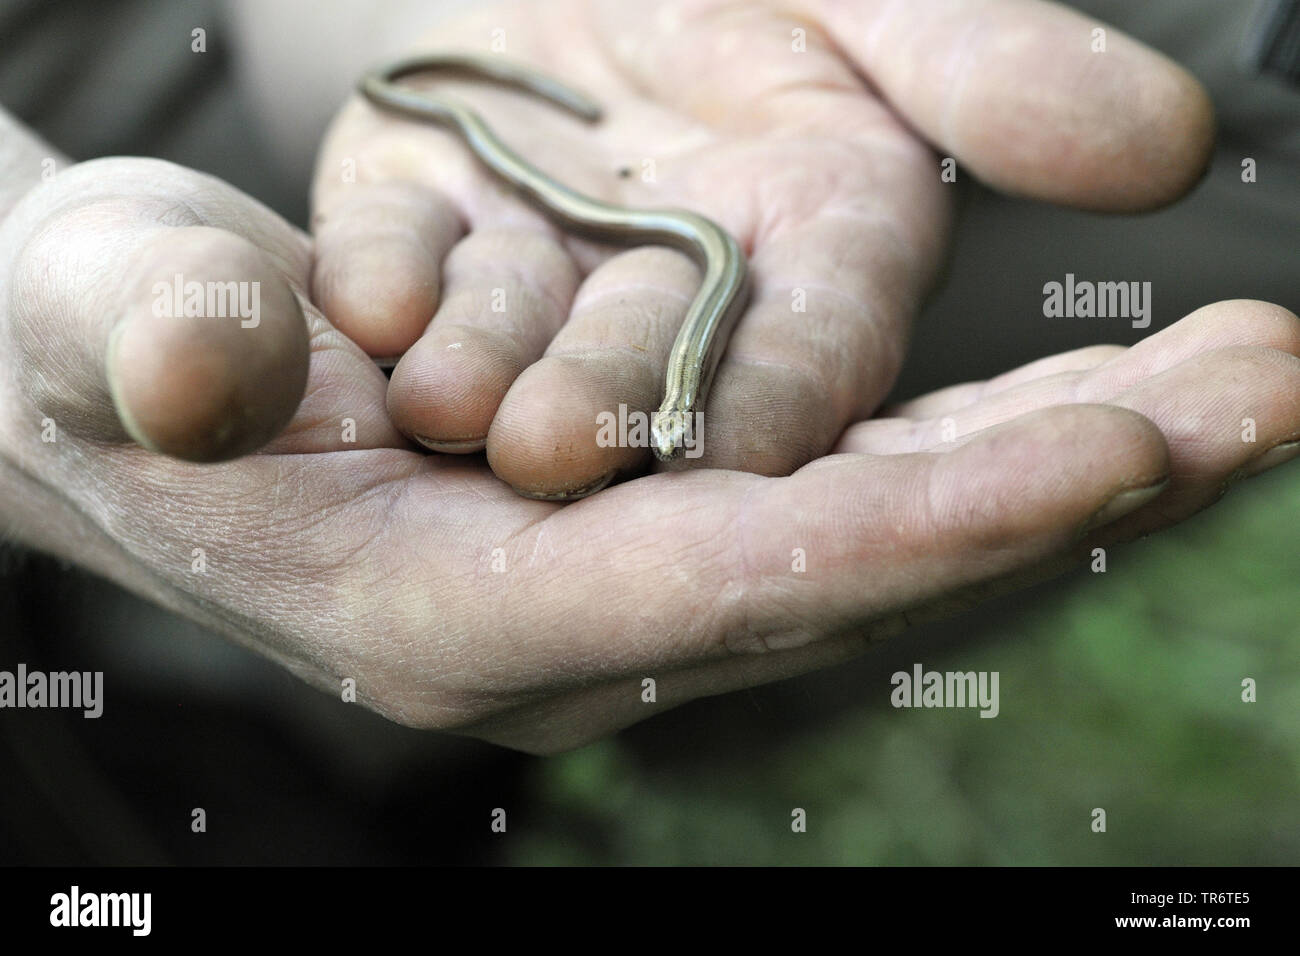 Europäische langsam Wurm, blindworm, Slow worm (Anguis fragilis), juvenil blindworm auf einer Hand, Deutschland, Nordrhein-Westfalen Stockfoto